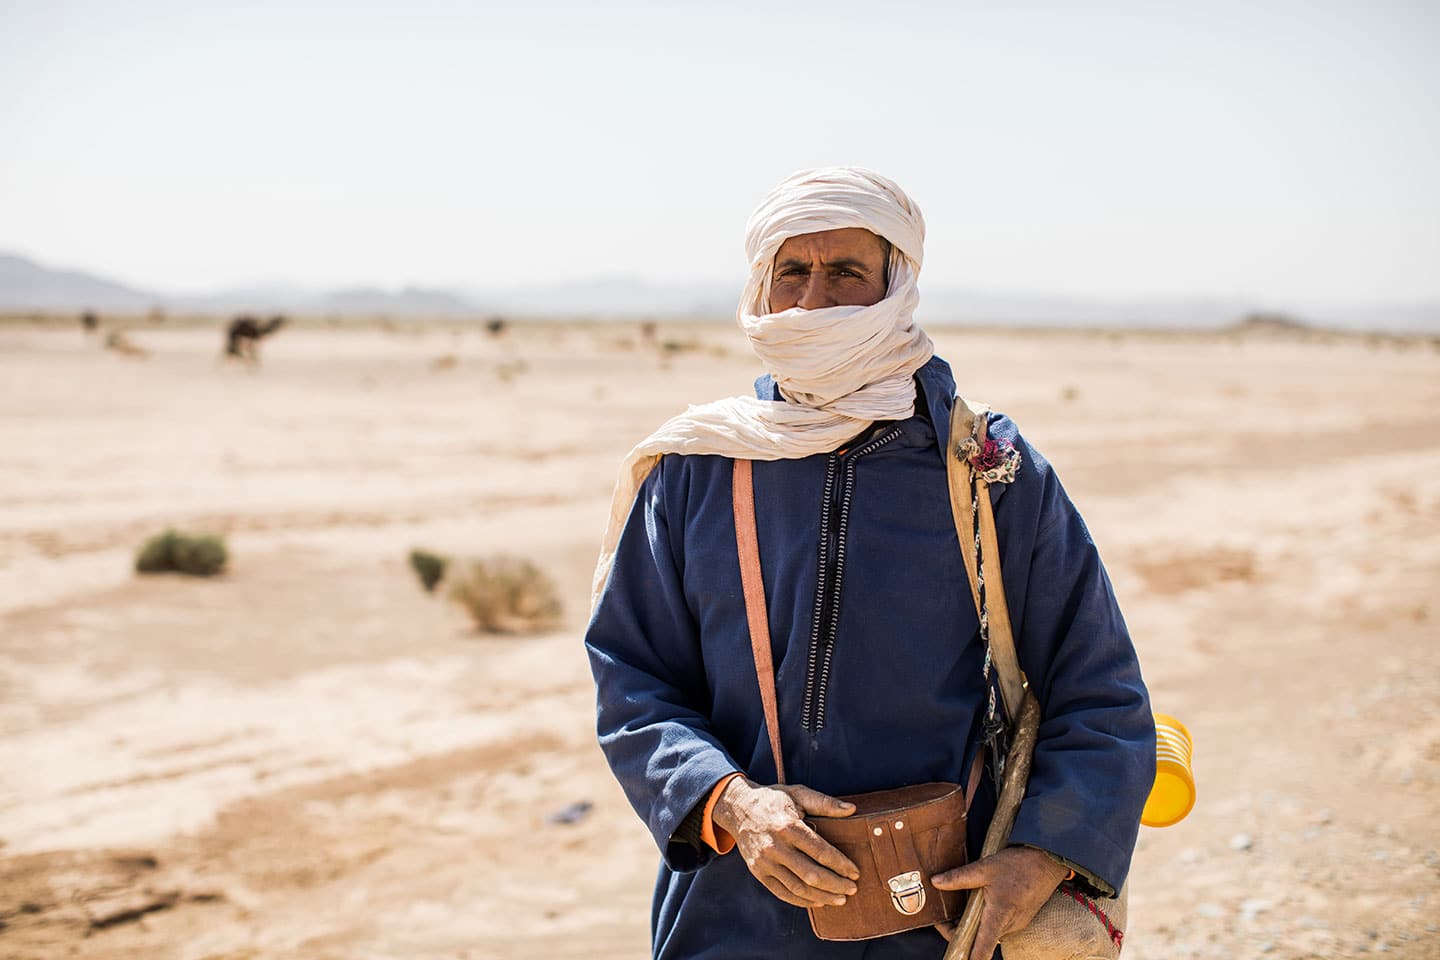 Bedouin guy in the Sahara Desert in Morocco